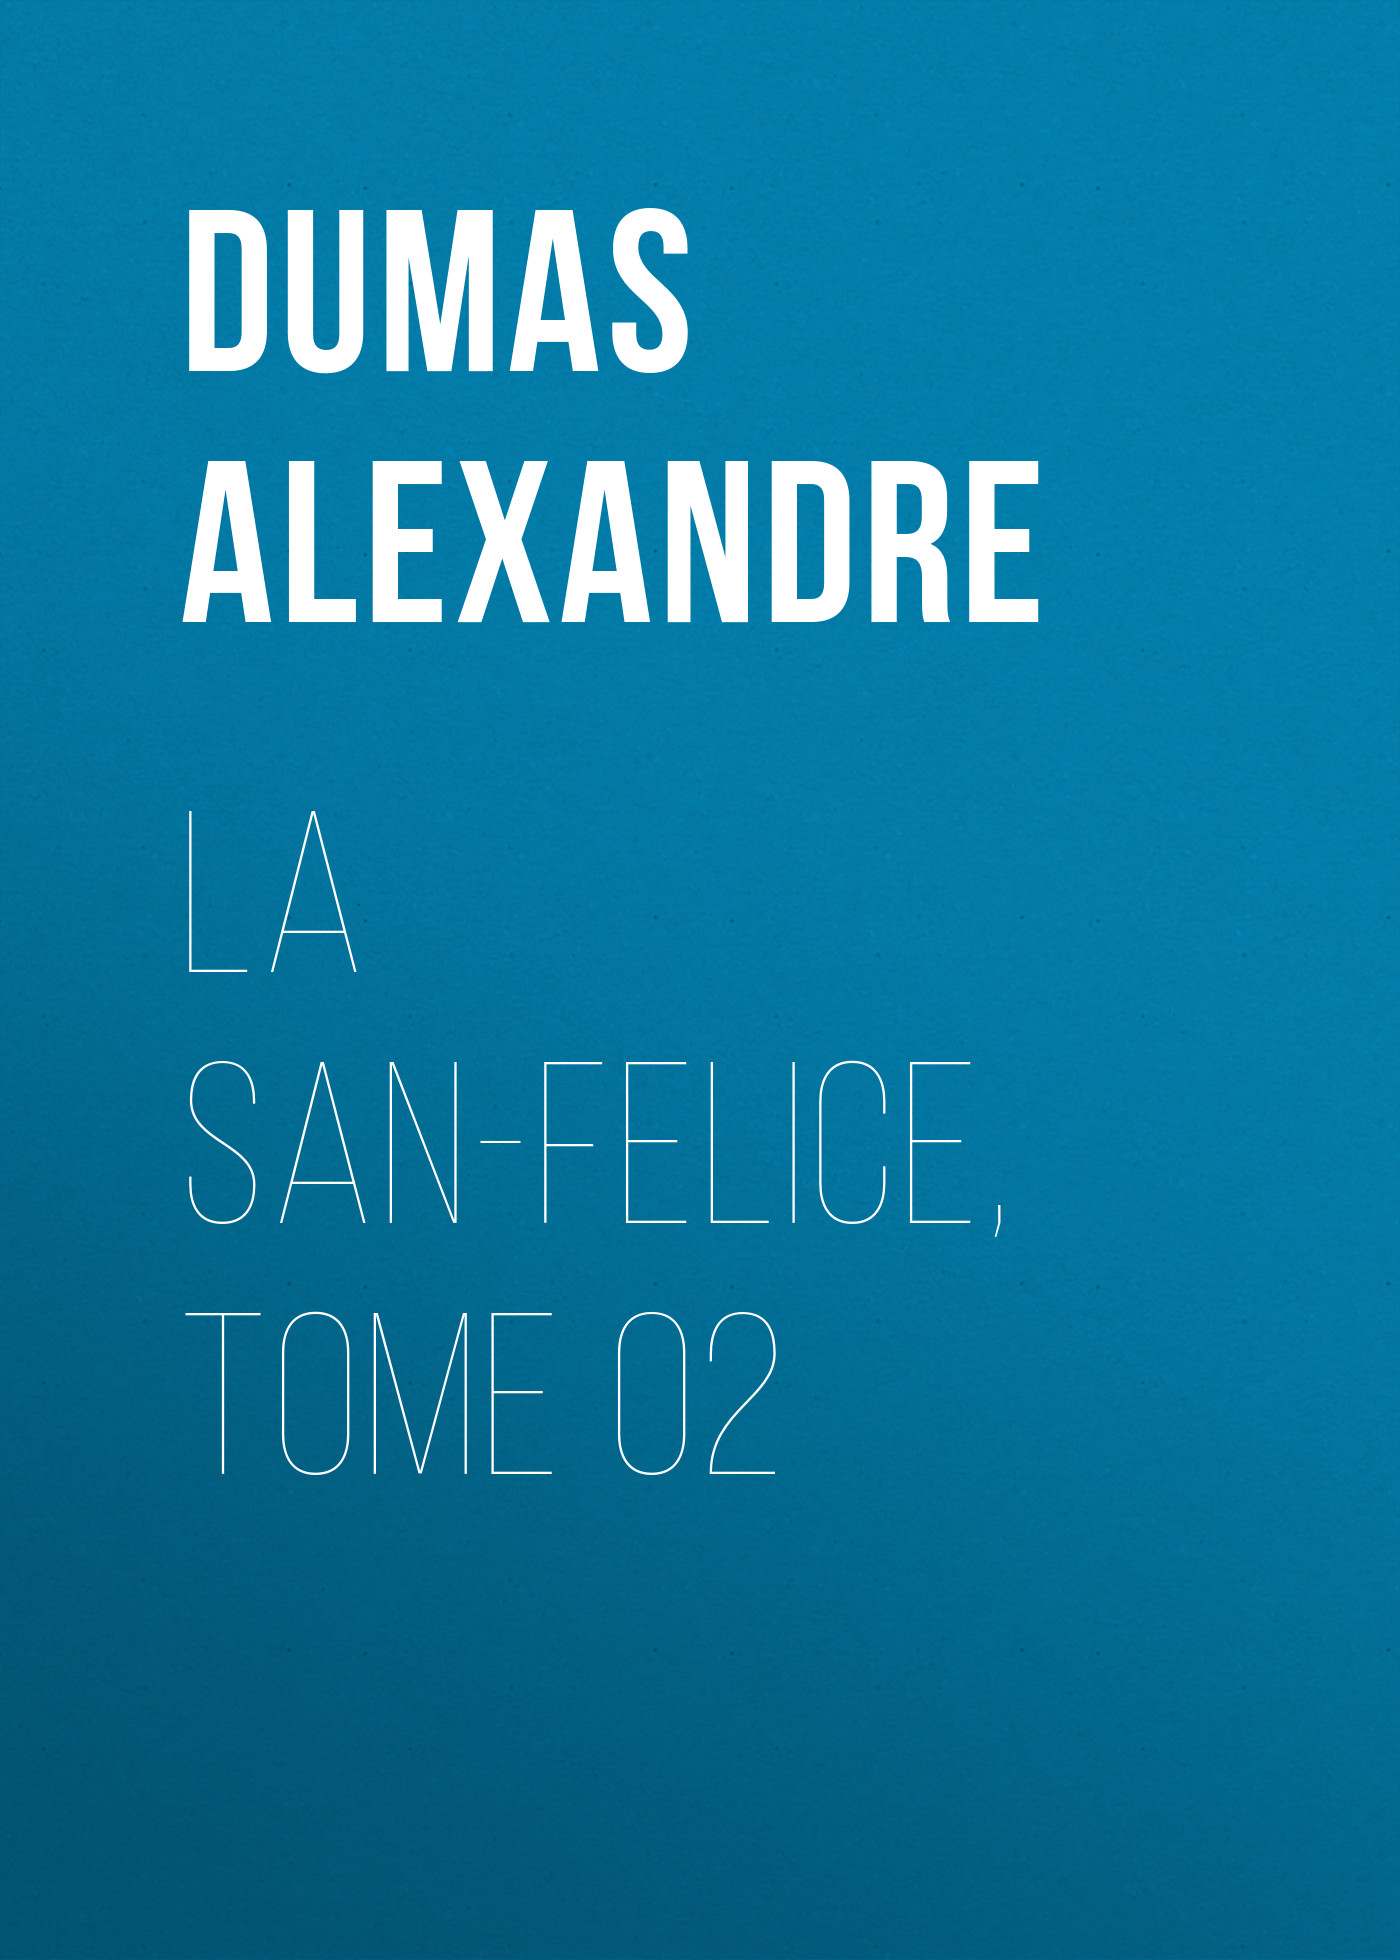 Книга La San-Felice, Tome 02 из серии , созданная Alexandre Dumas, может относится к жанру Литература 19 века, Зарубежная старинная литература, Зарубежная классика. Стоимость электронной книги La San-Felice, Tome 02 с идентификатором 25203439 составляет 0 руб.